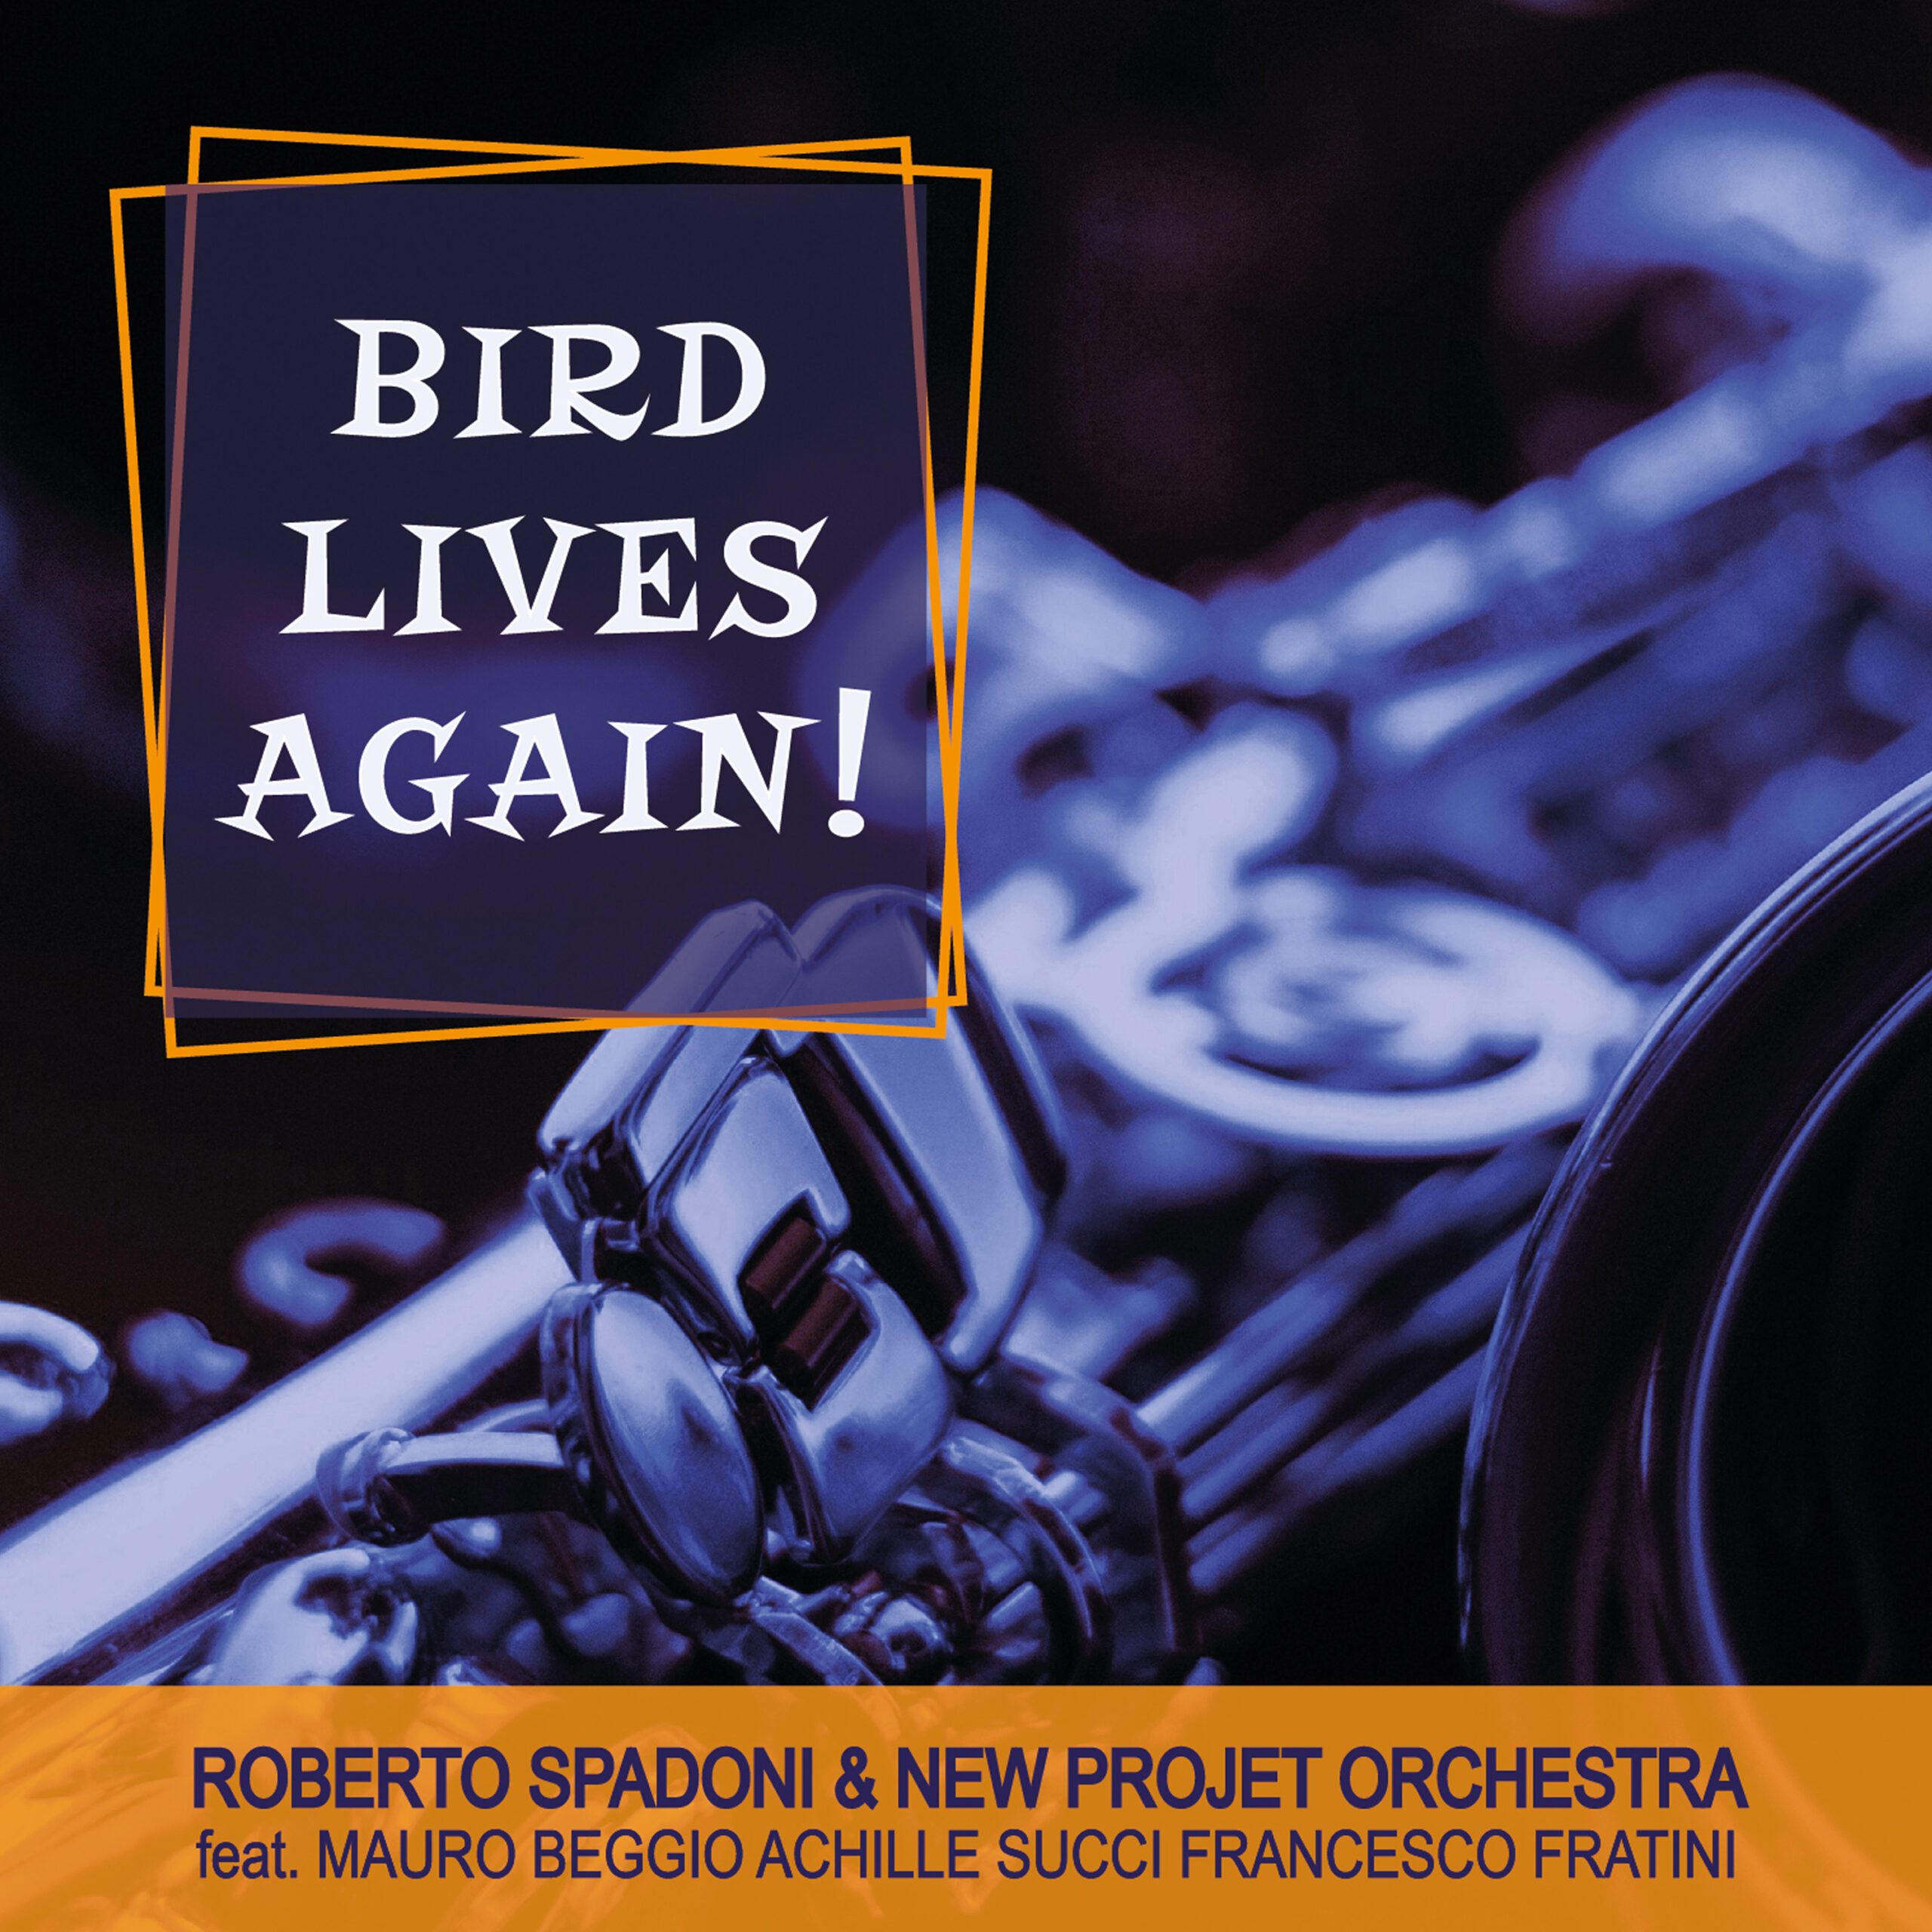 Al momento stai visualizzando BIRD LIVES AGAIN! by New Project Orchestra & Roberto Spadoni